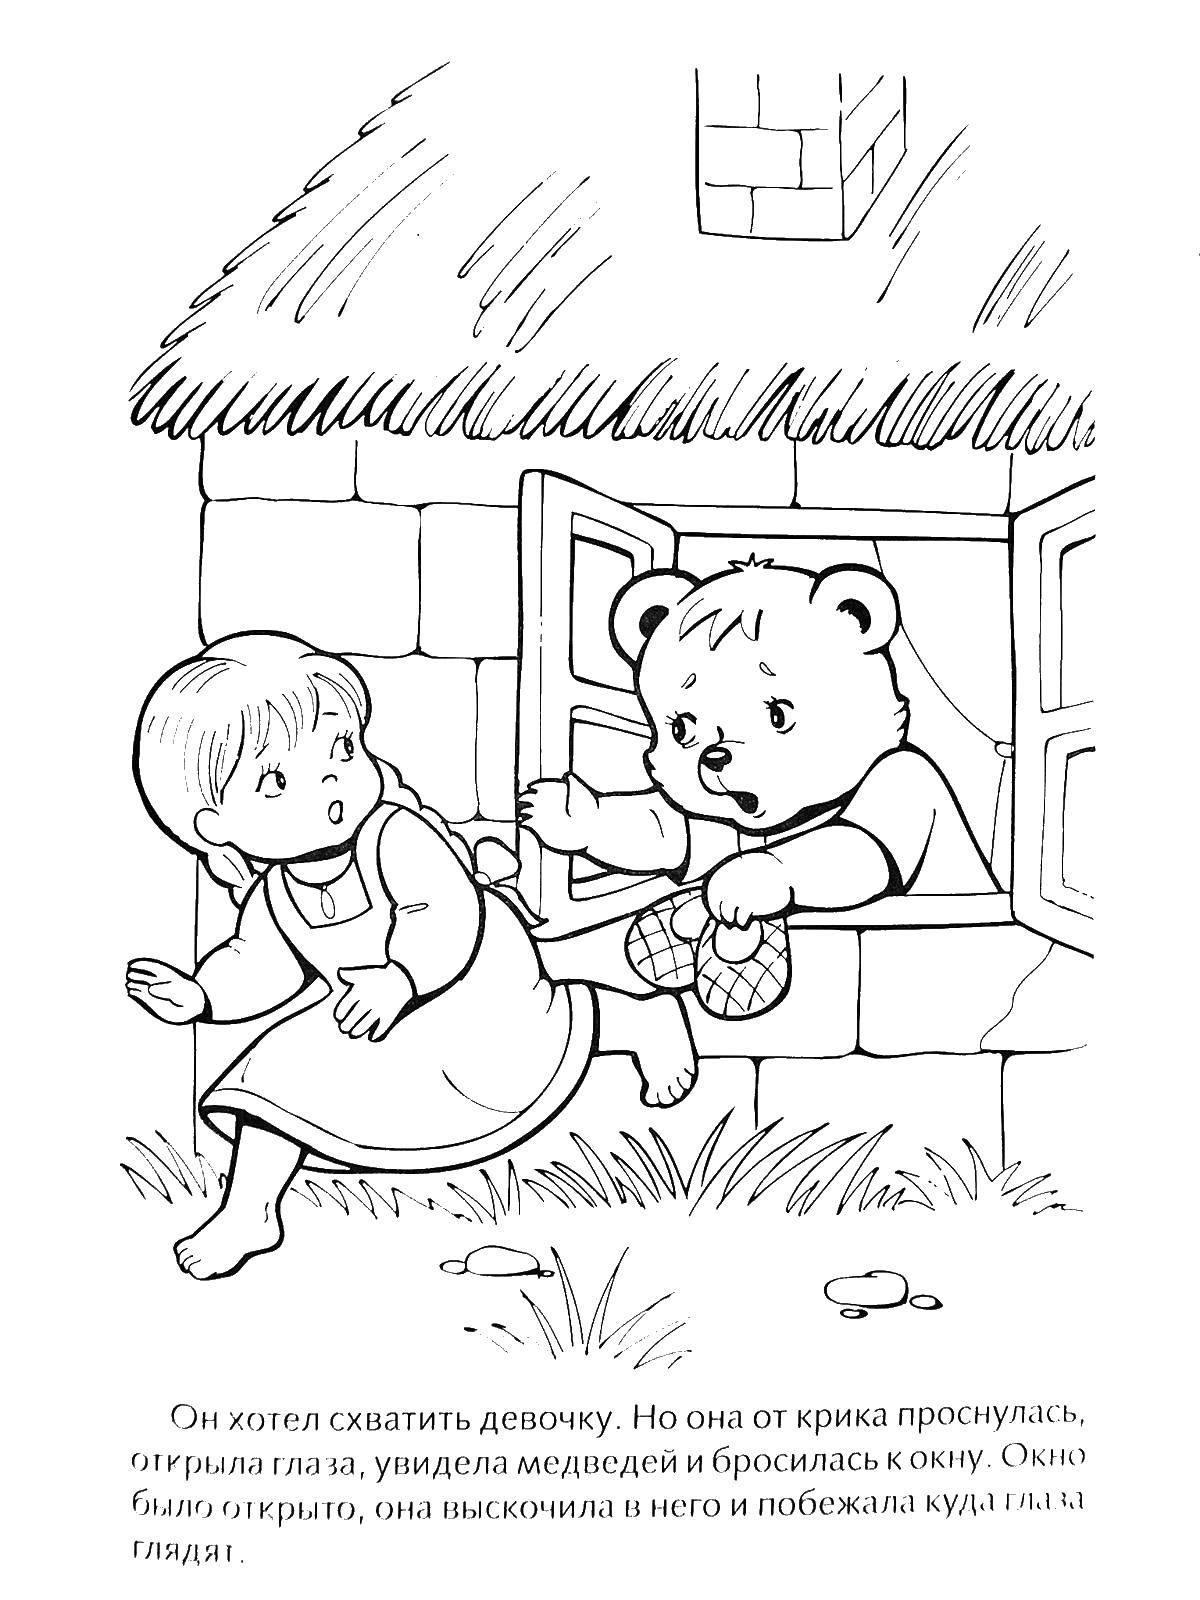 Картинки раскраски к сказкам. Раскраска по сказке три медведя для детей. Маша и три медведя сказка раскраска. Раскраска к сказке три медведя для детей. Раскраска русские народные сказки три медведя.